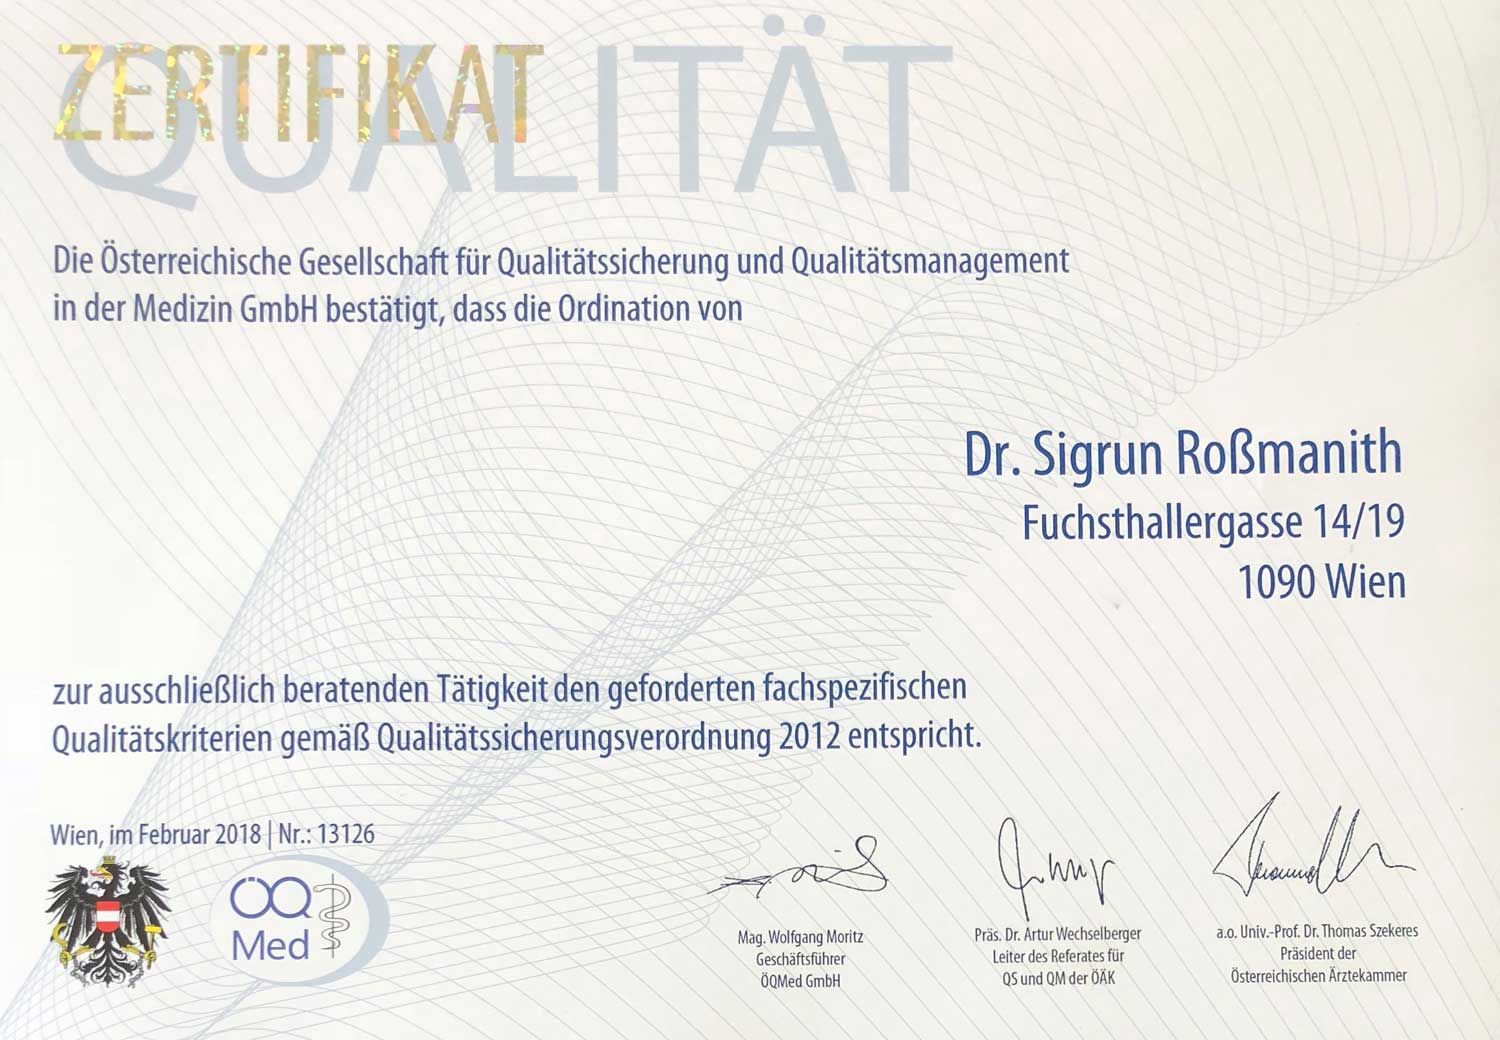 Zertifikat der Österreichischen Gesellschaft für Qualitätssicherung und Qualitätsmanagement in der Medizin